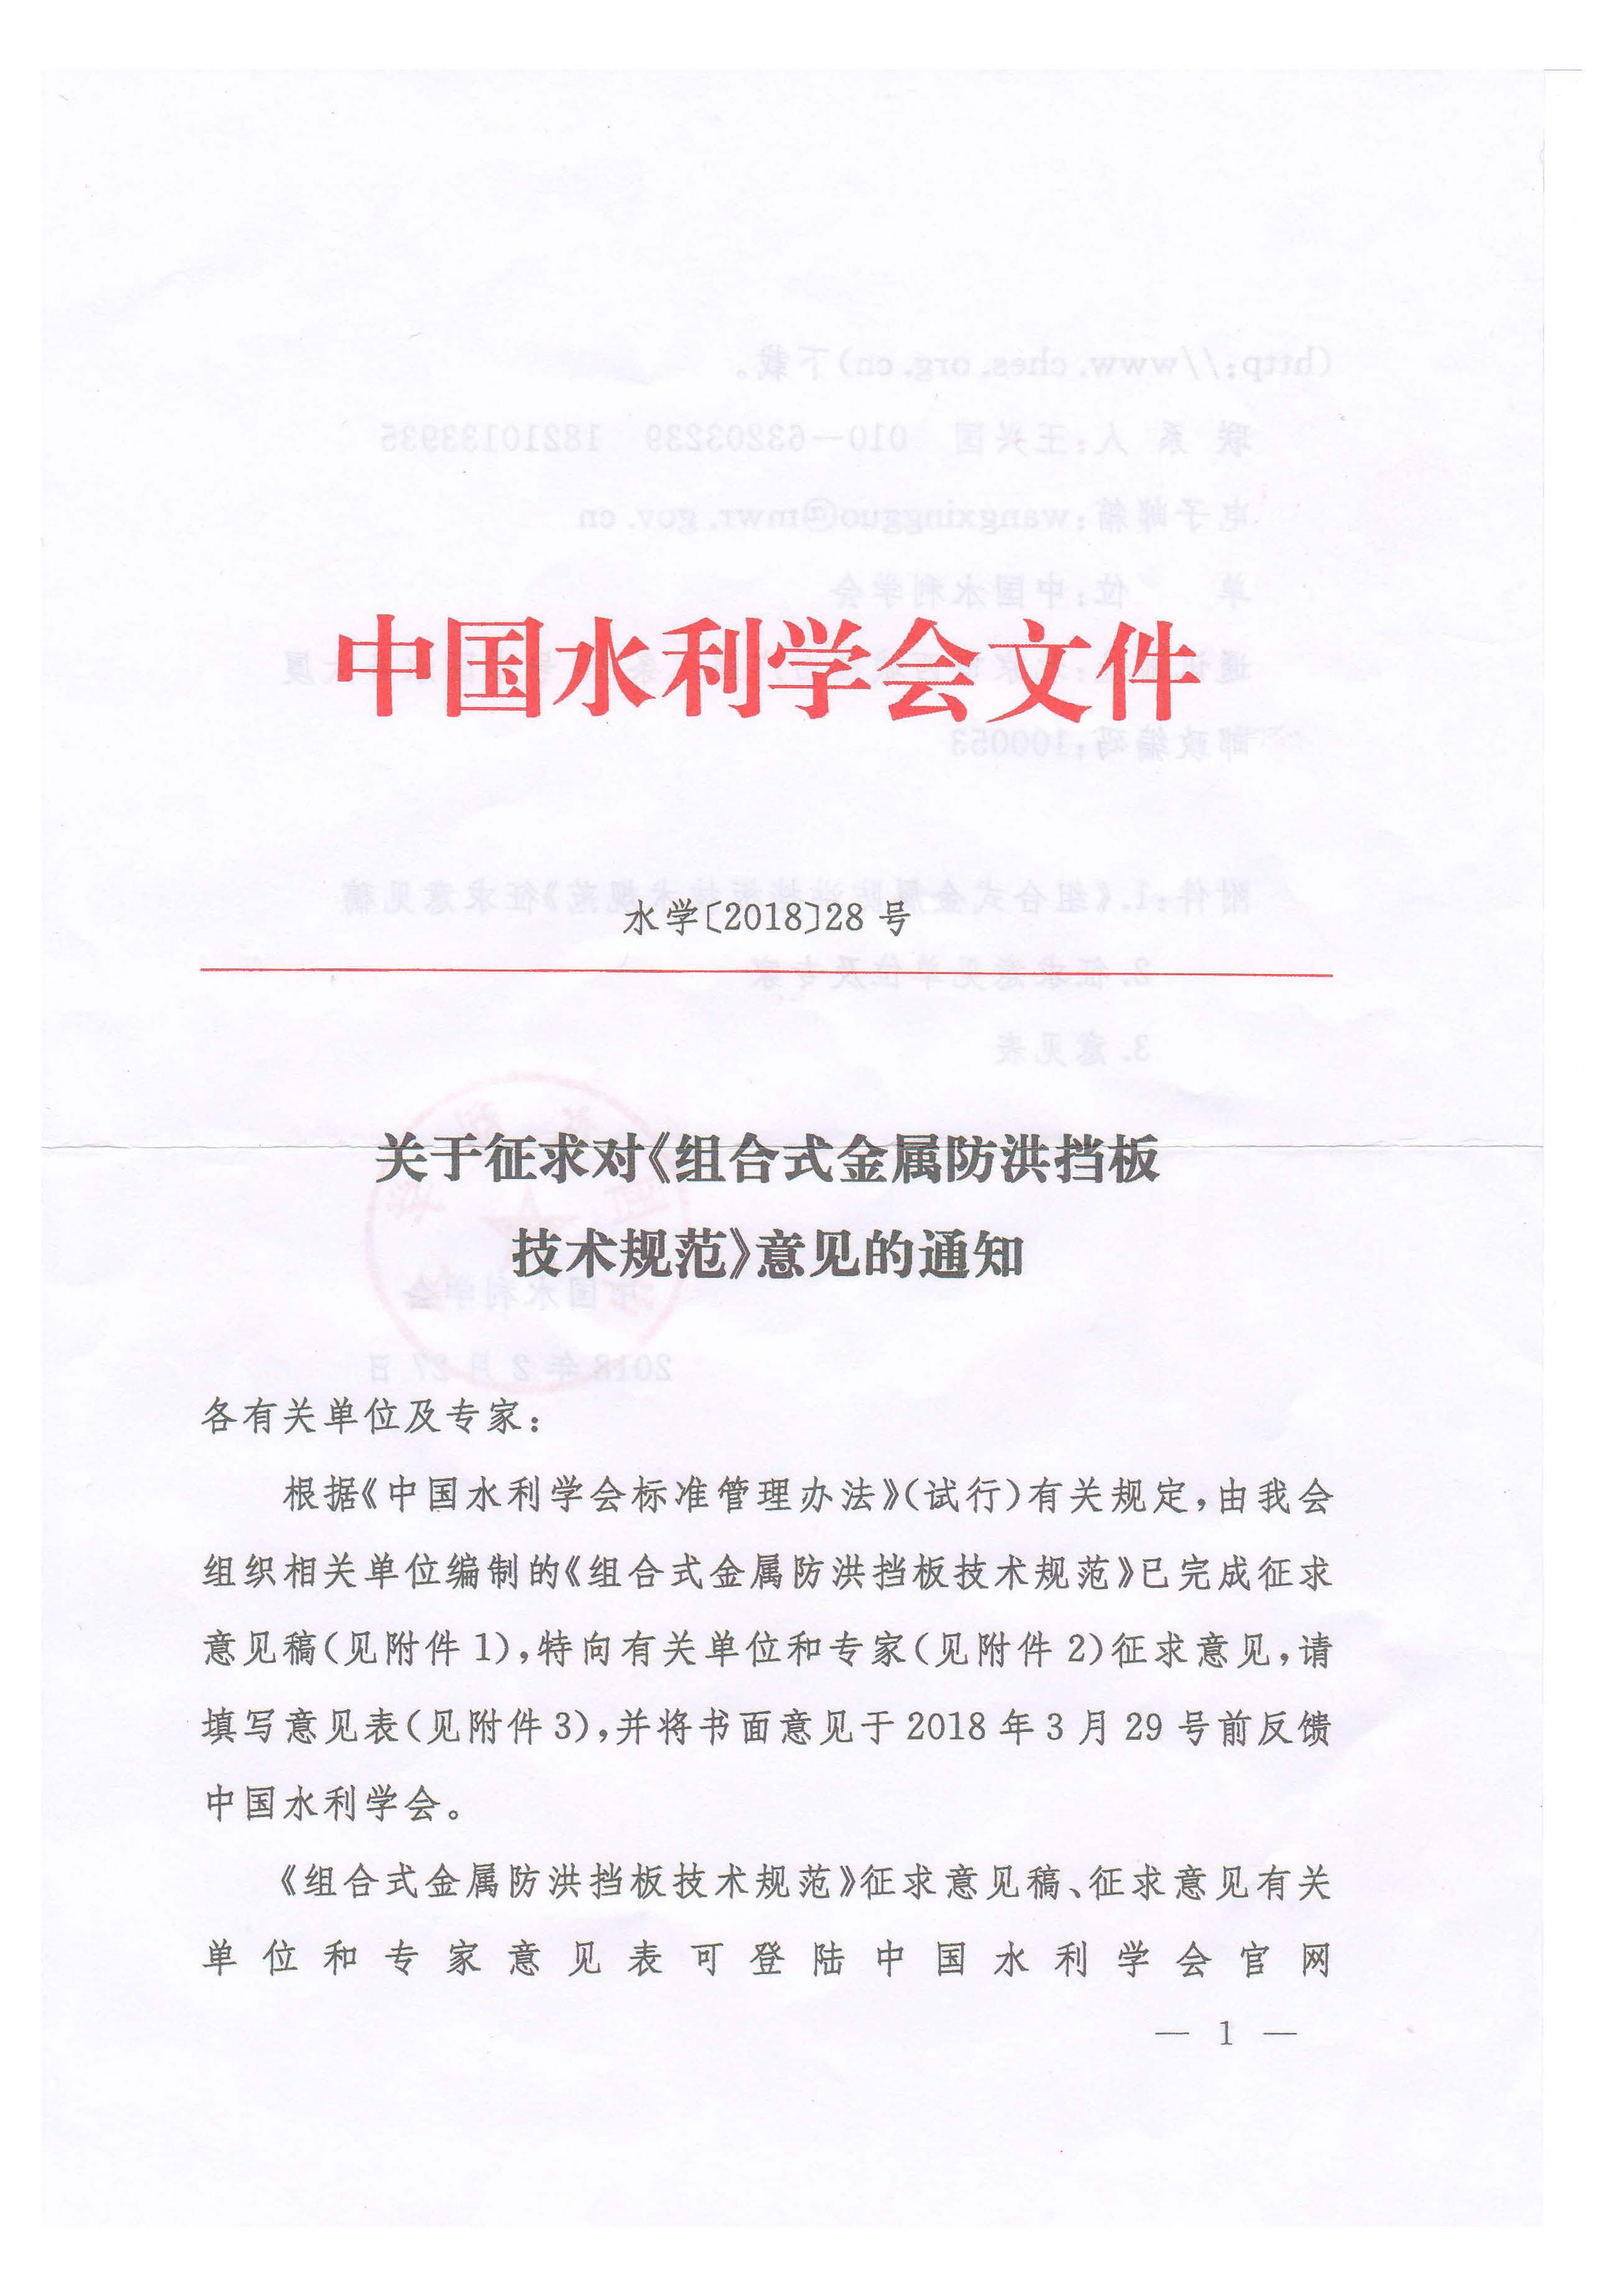 江西省水利学会转发关于征求对《组合式金属防洪挡板技术规范》意见的通知_页面_3.jpg